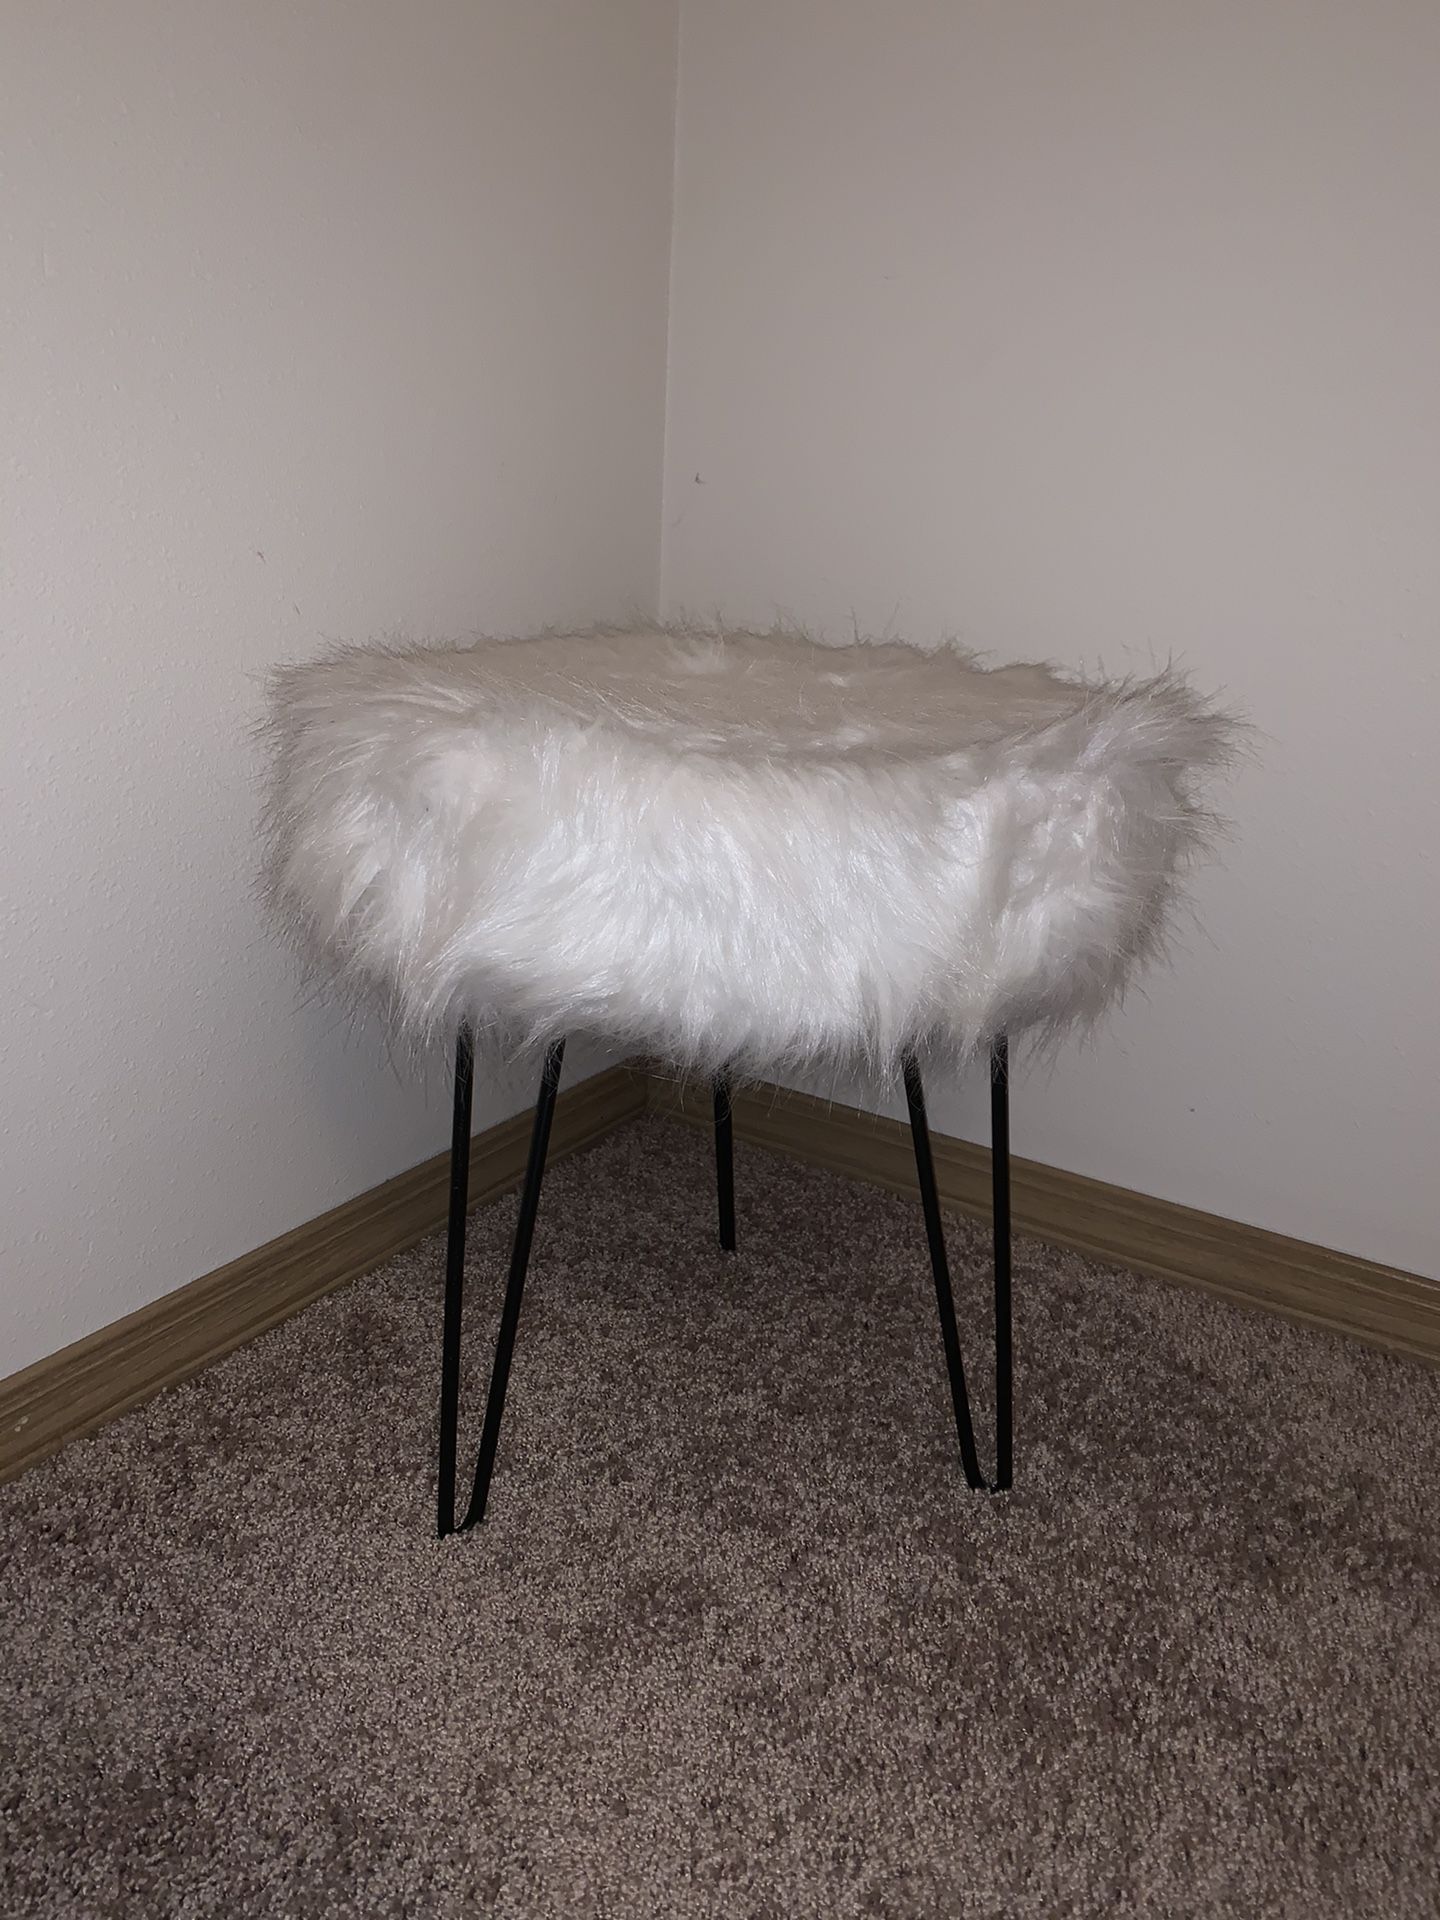 Small stool